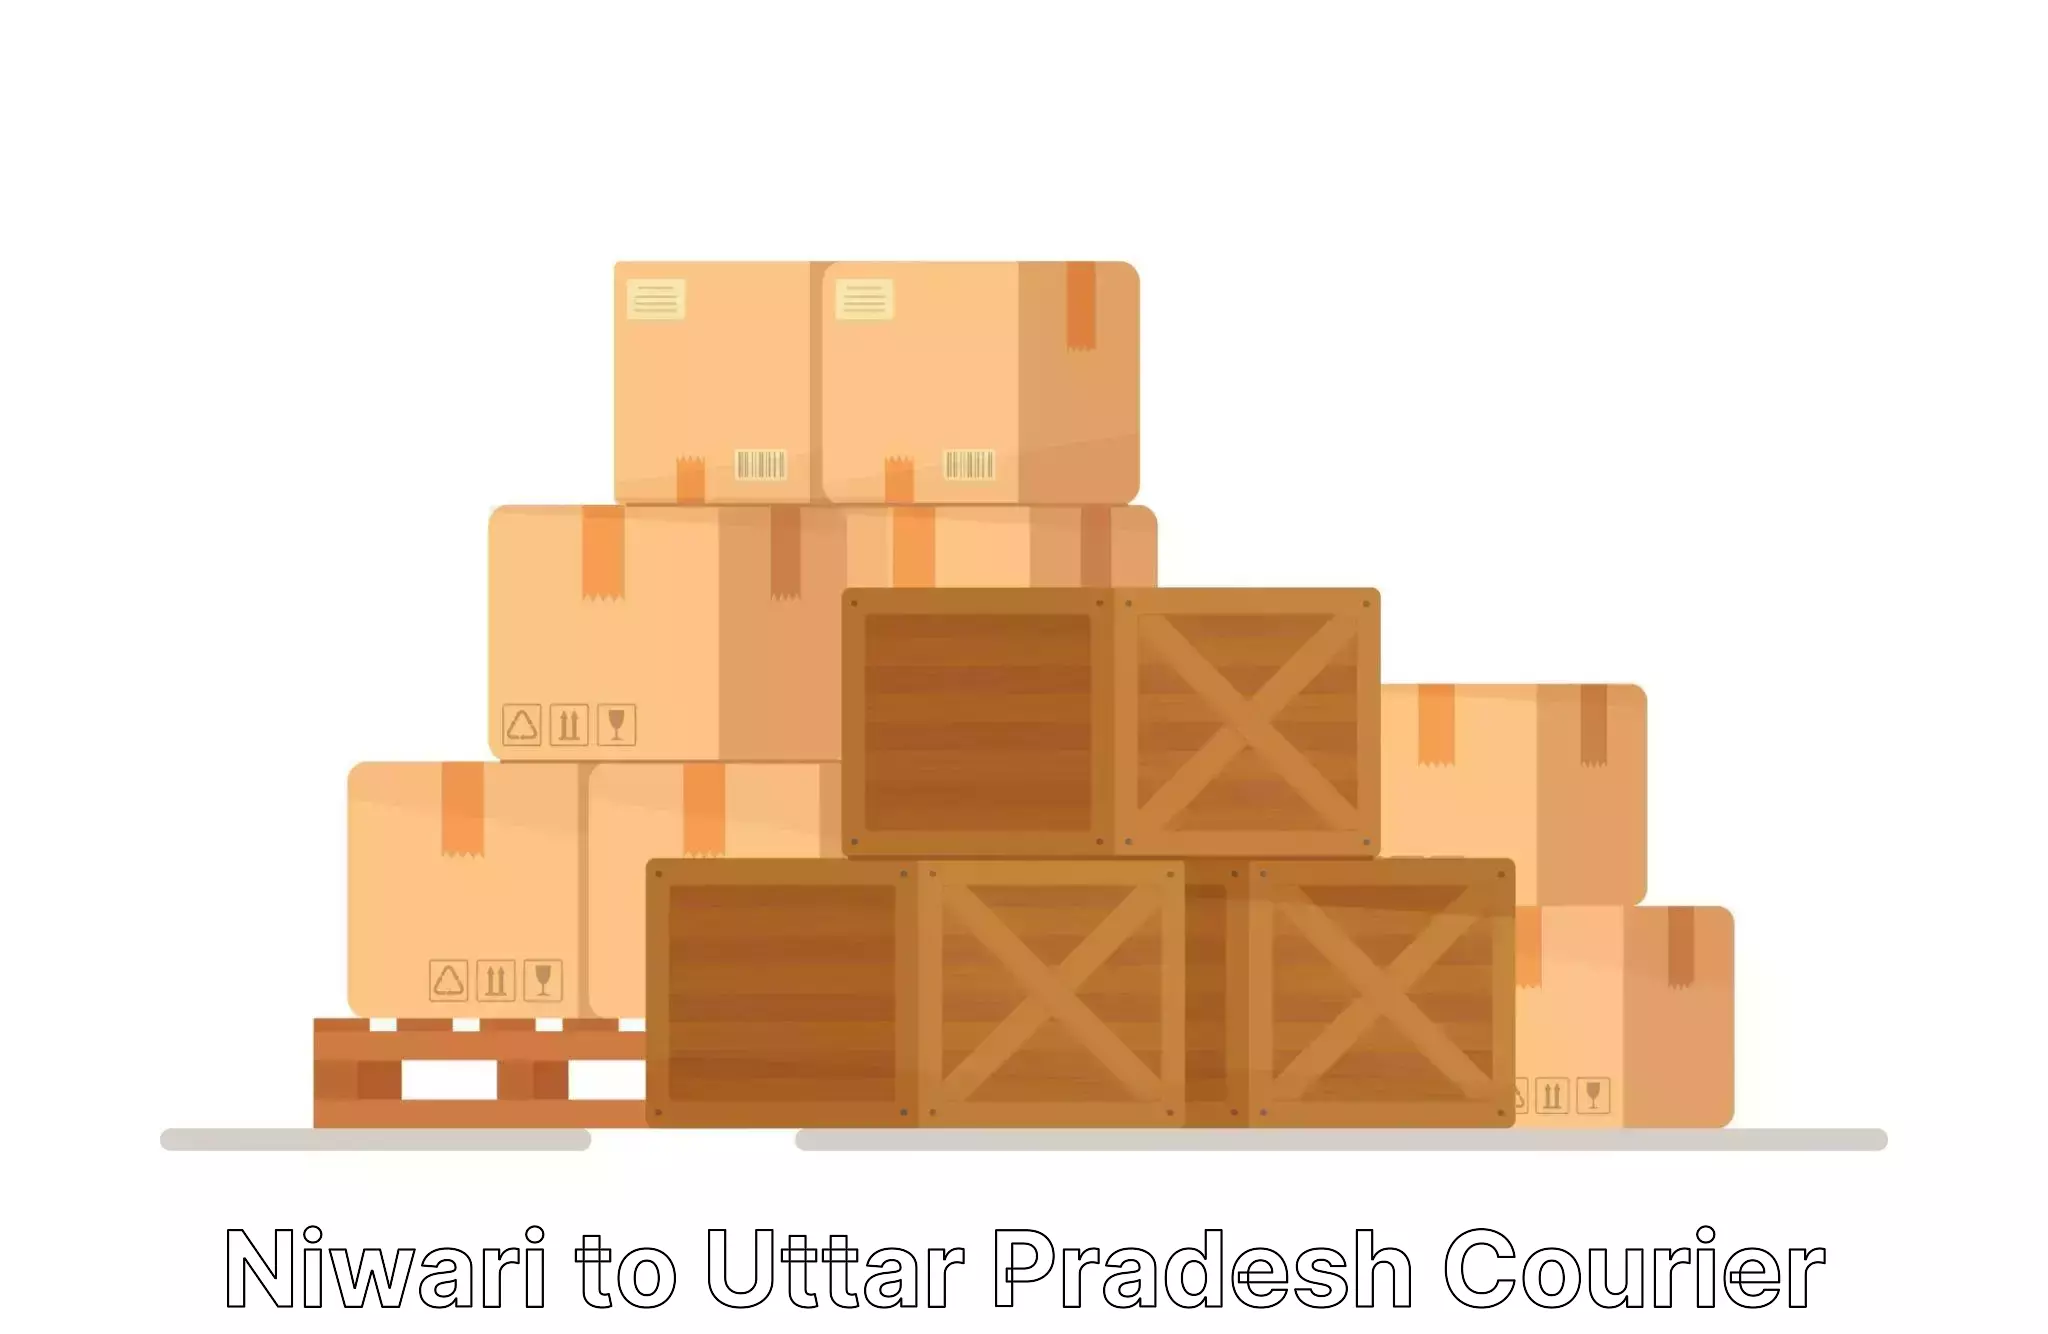 Professional packing services in Niwari to Uttar Pradesh